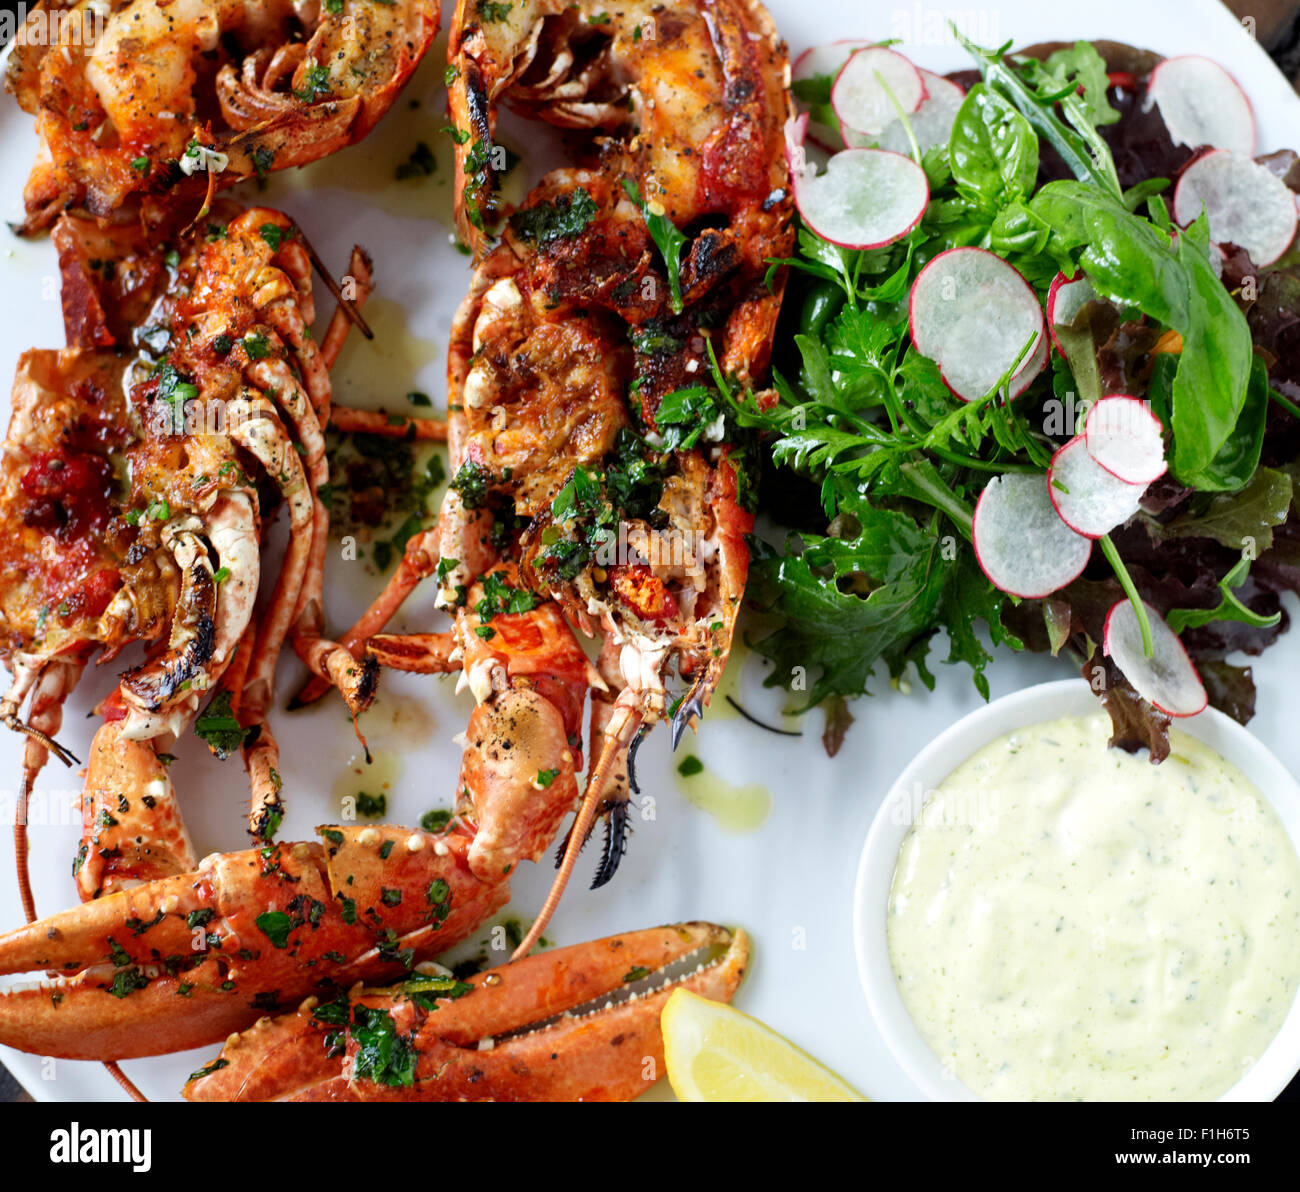 Un gros plan du homard et des crustacés présentés sur une assiette avec du citron, sauce tartare, assaisonnement, et une salade. Banque D'Images